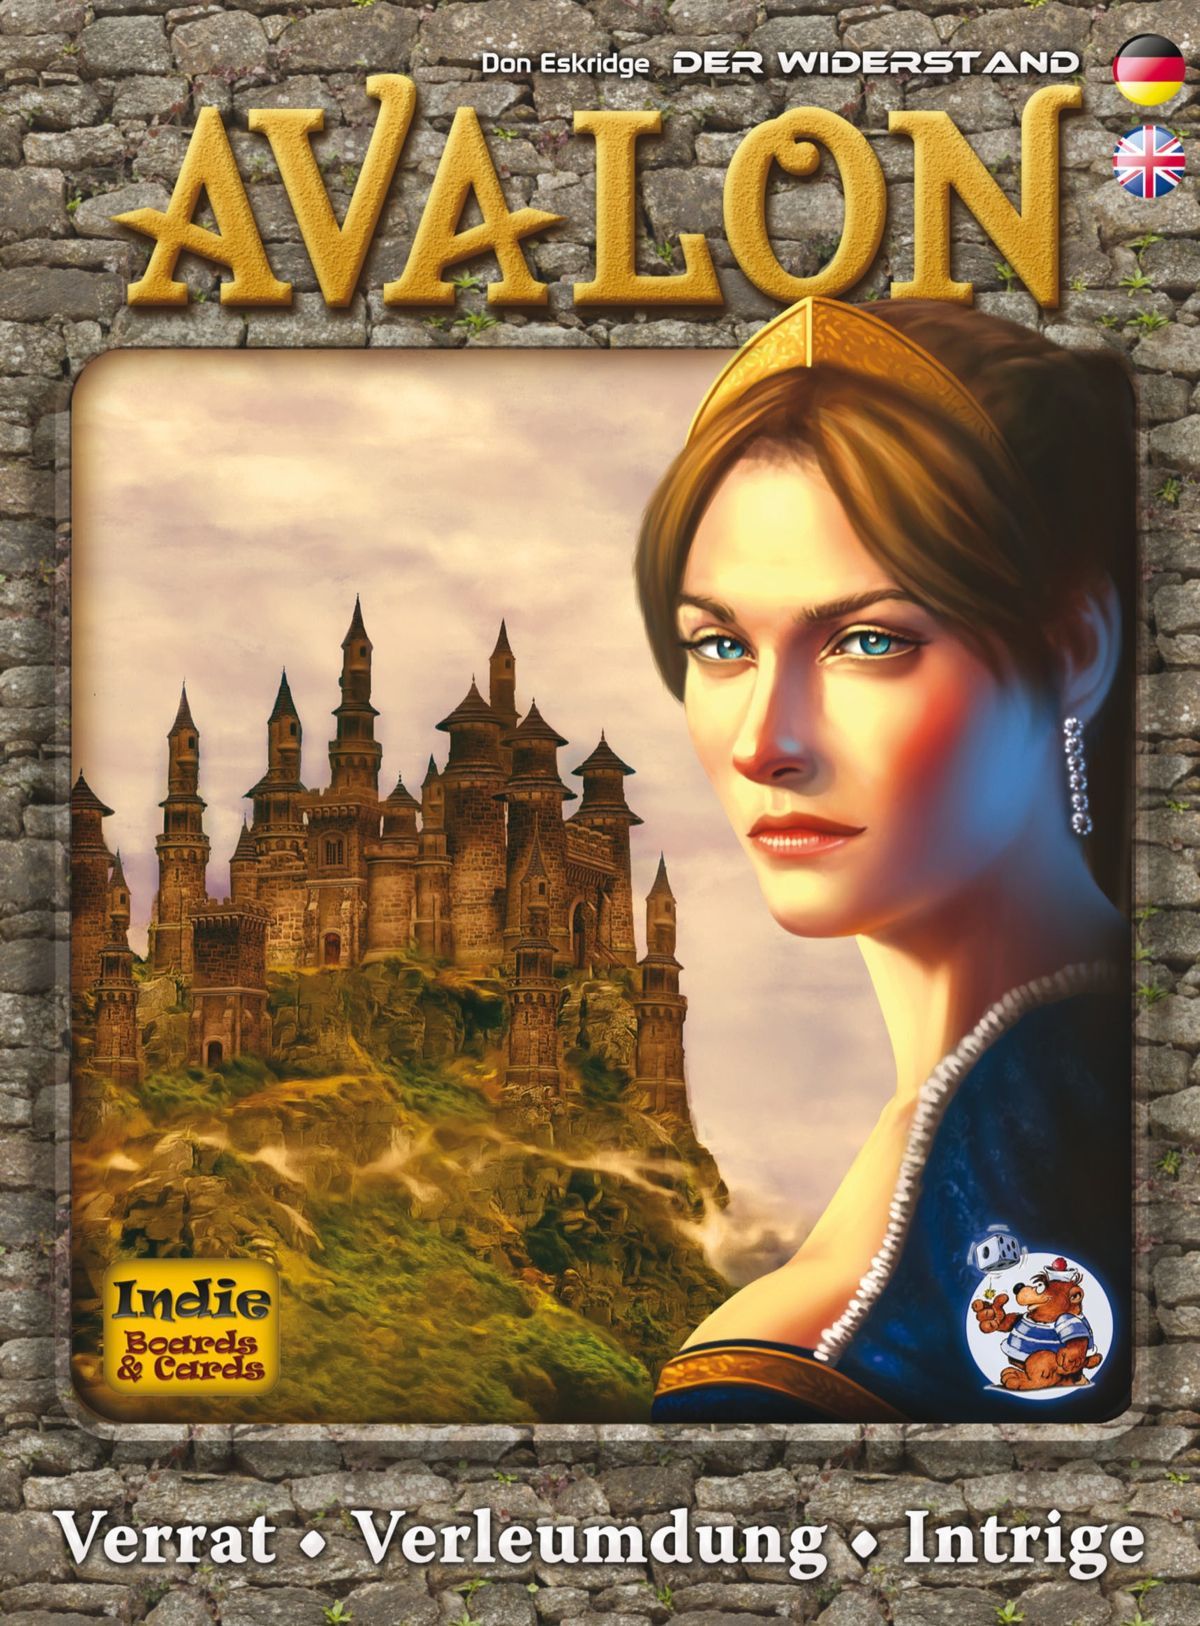 Der Widerstand: Avalon